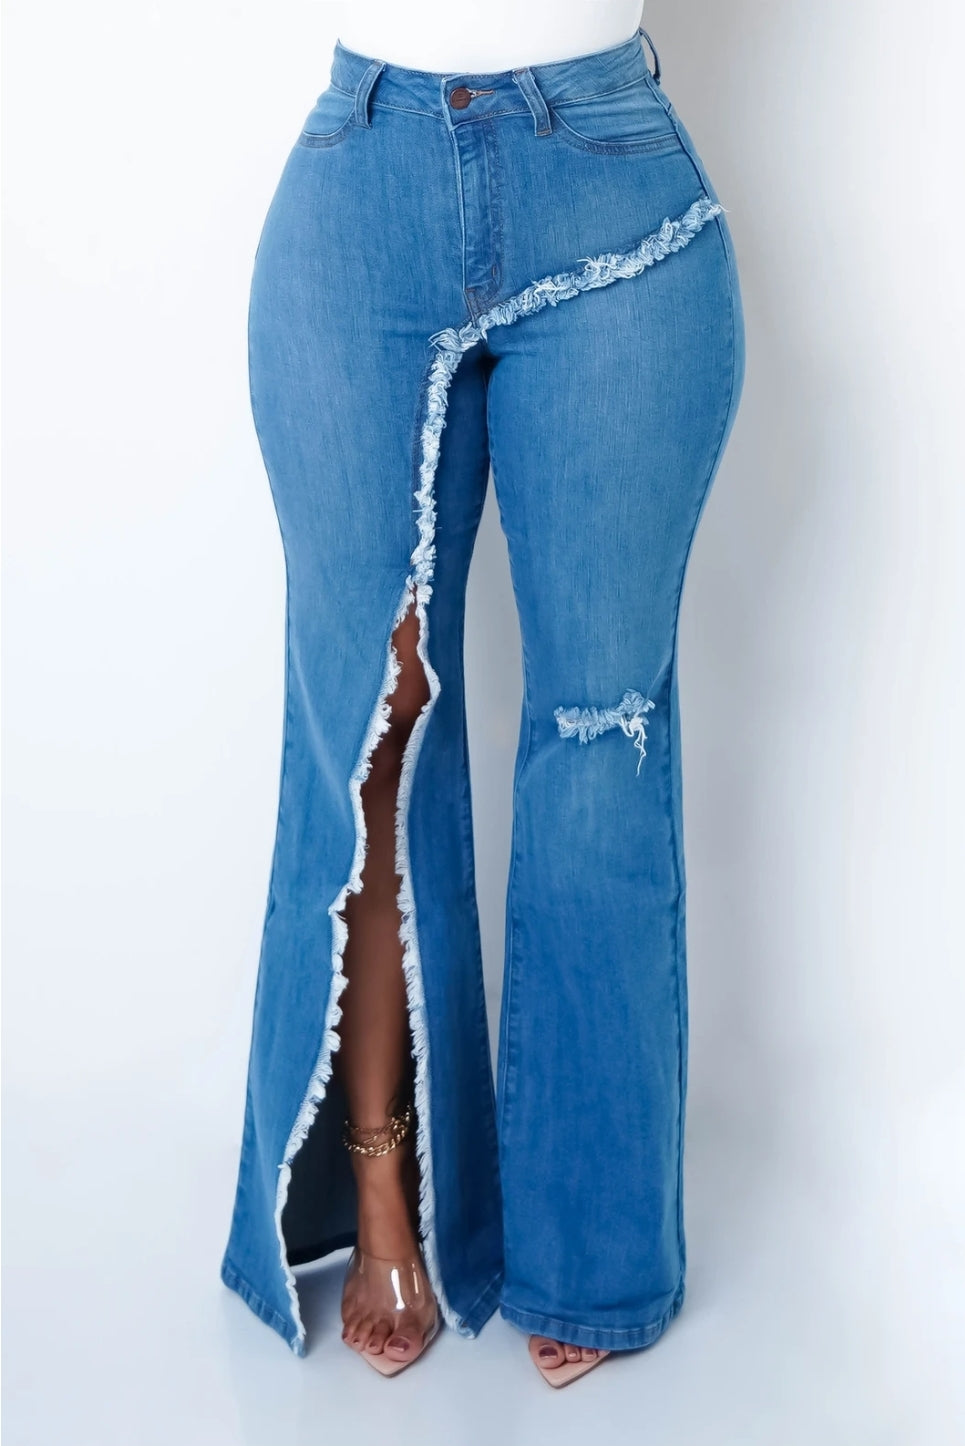 Diva in Denim jeans